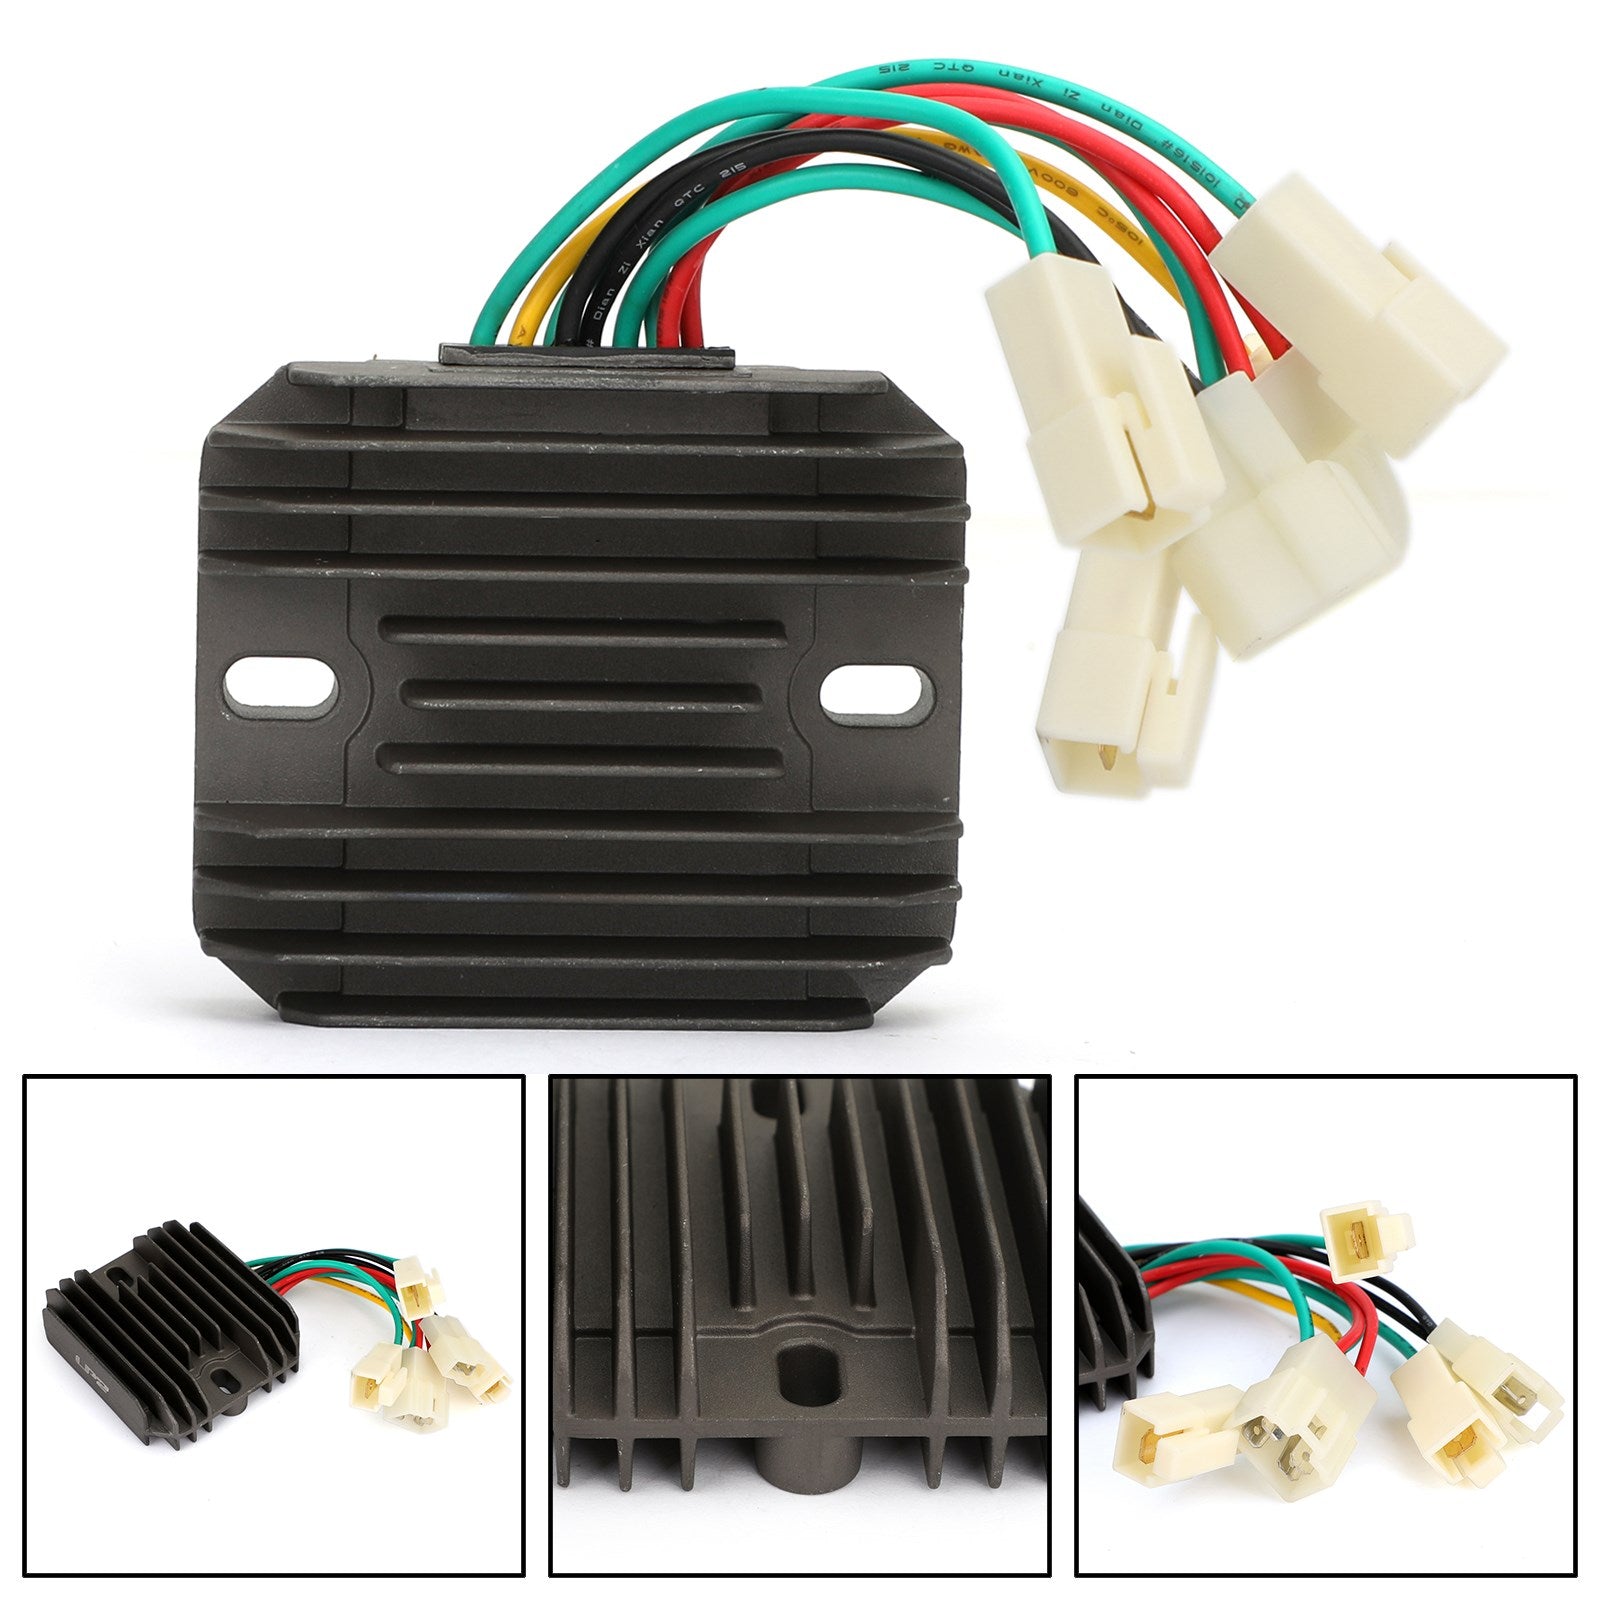 Spannungsregler-Gleichrichter, passend für John Deere 2520 26,4 PS, 4010 18,5 PS Diesel